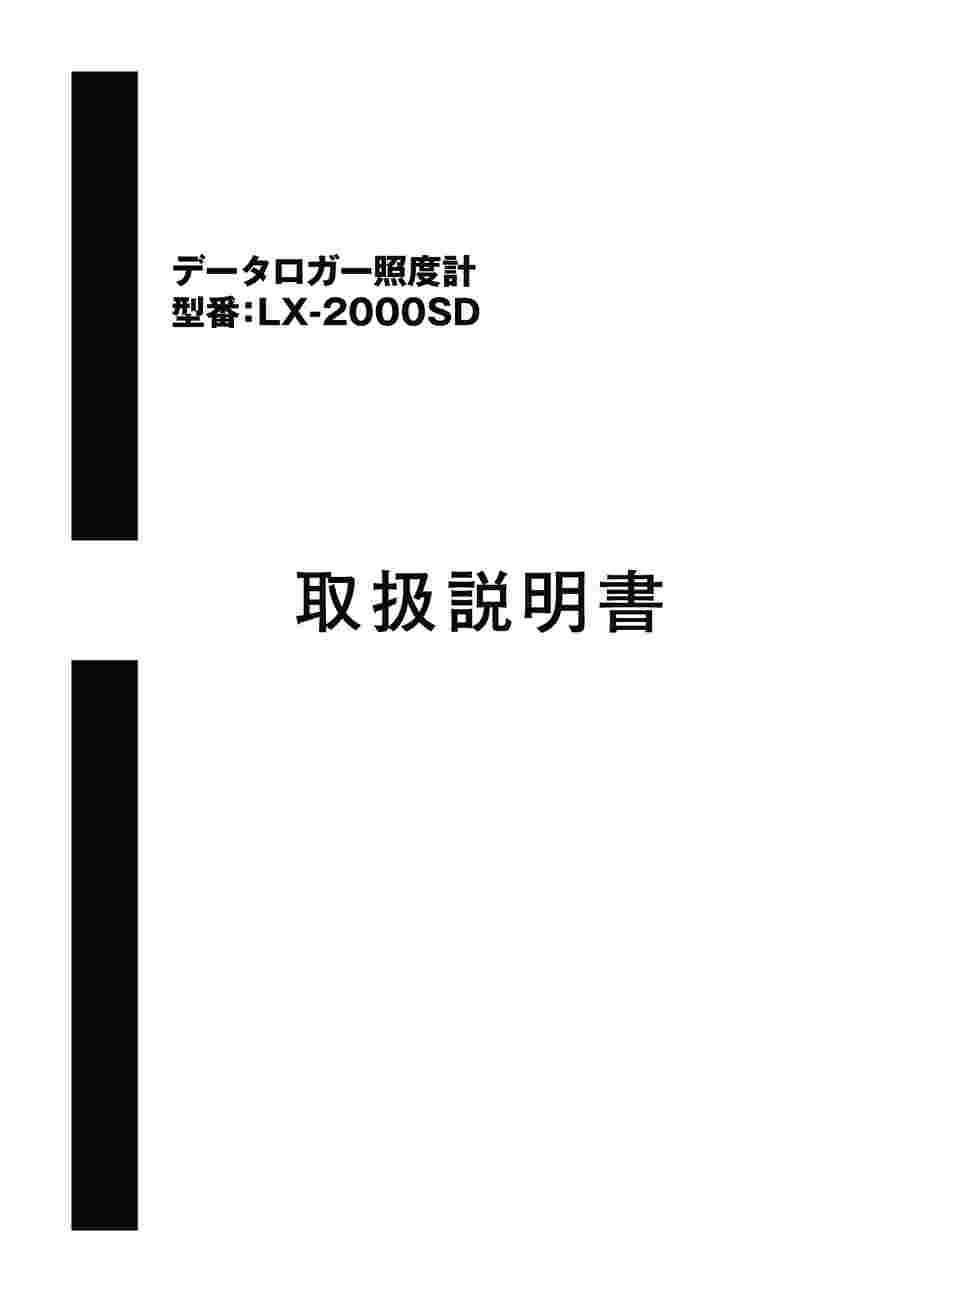 1-3245-01 データロガー照度計 LX-2000SD 【AXEL】 アズワン